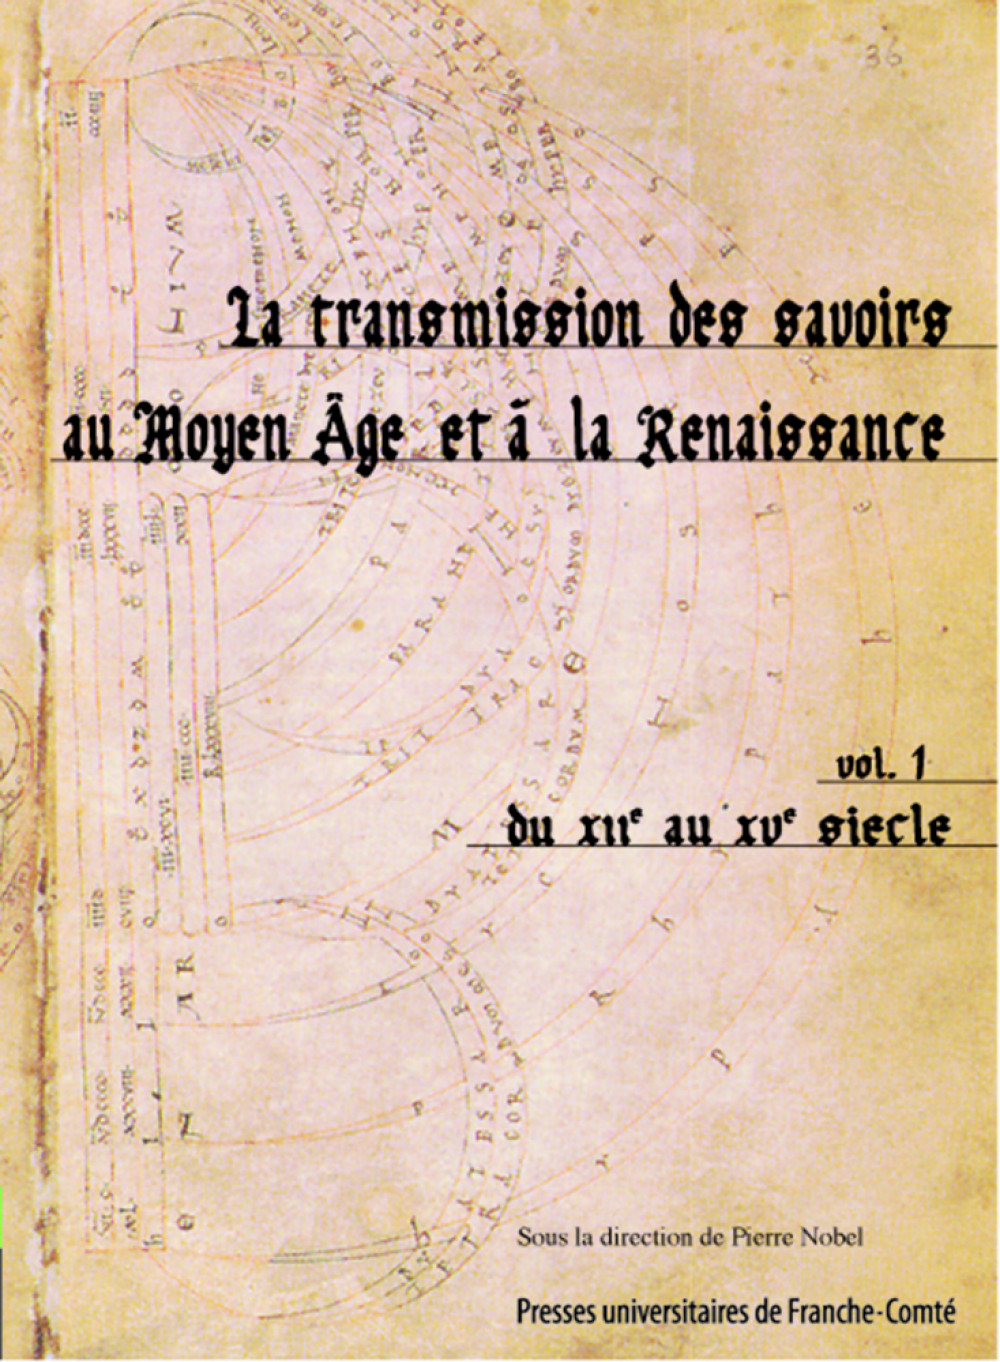 La transmission des savoirs au Moyen Âge et à la Renaissance Volume 1 du XIIe au XVe siècle